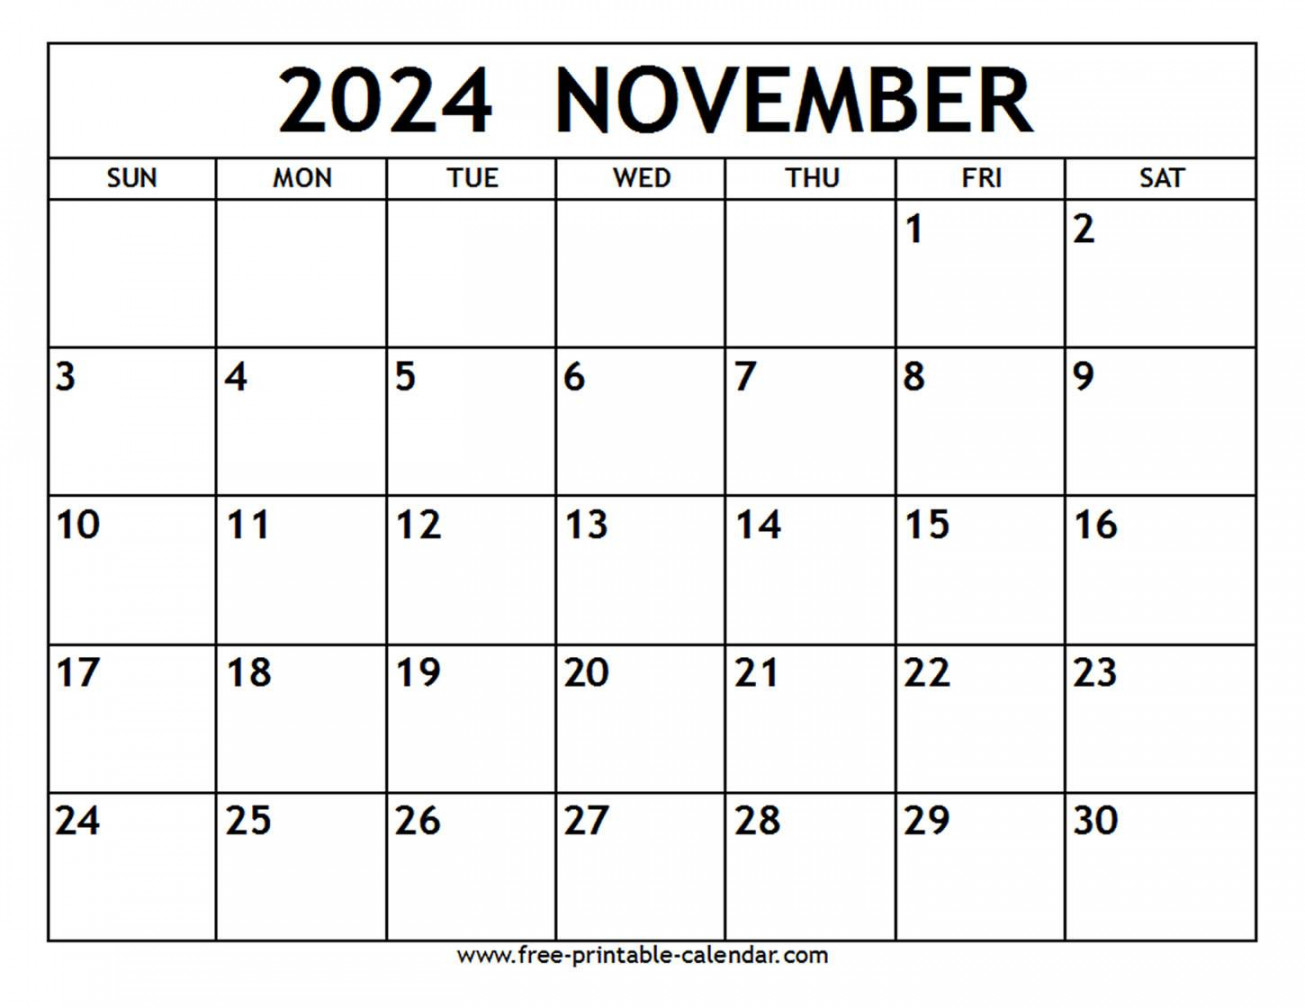 november calendar free printable calendar com 0